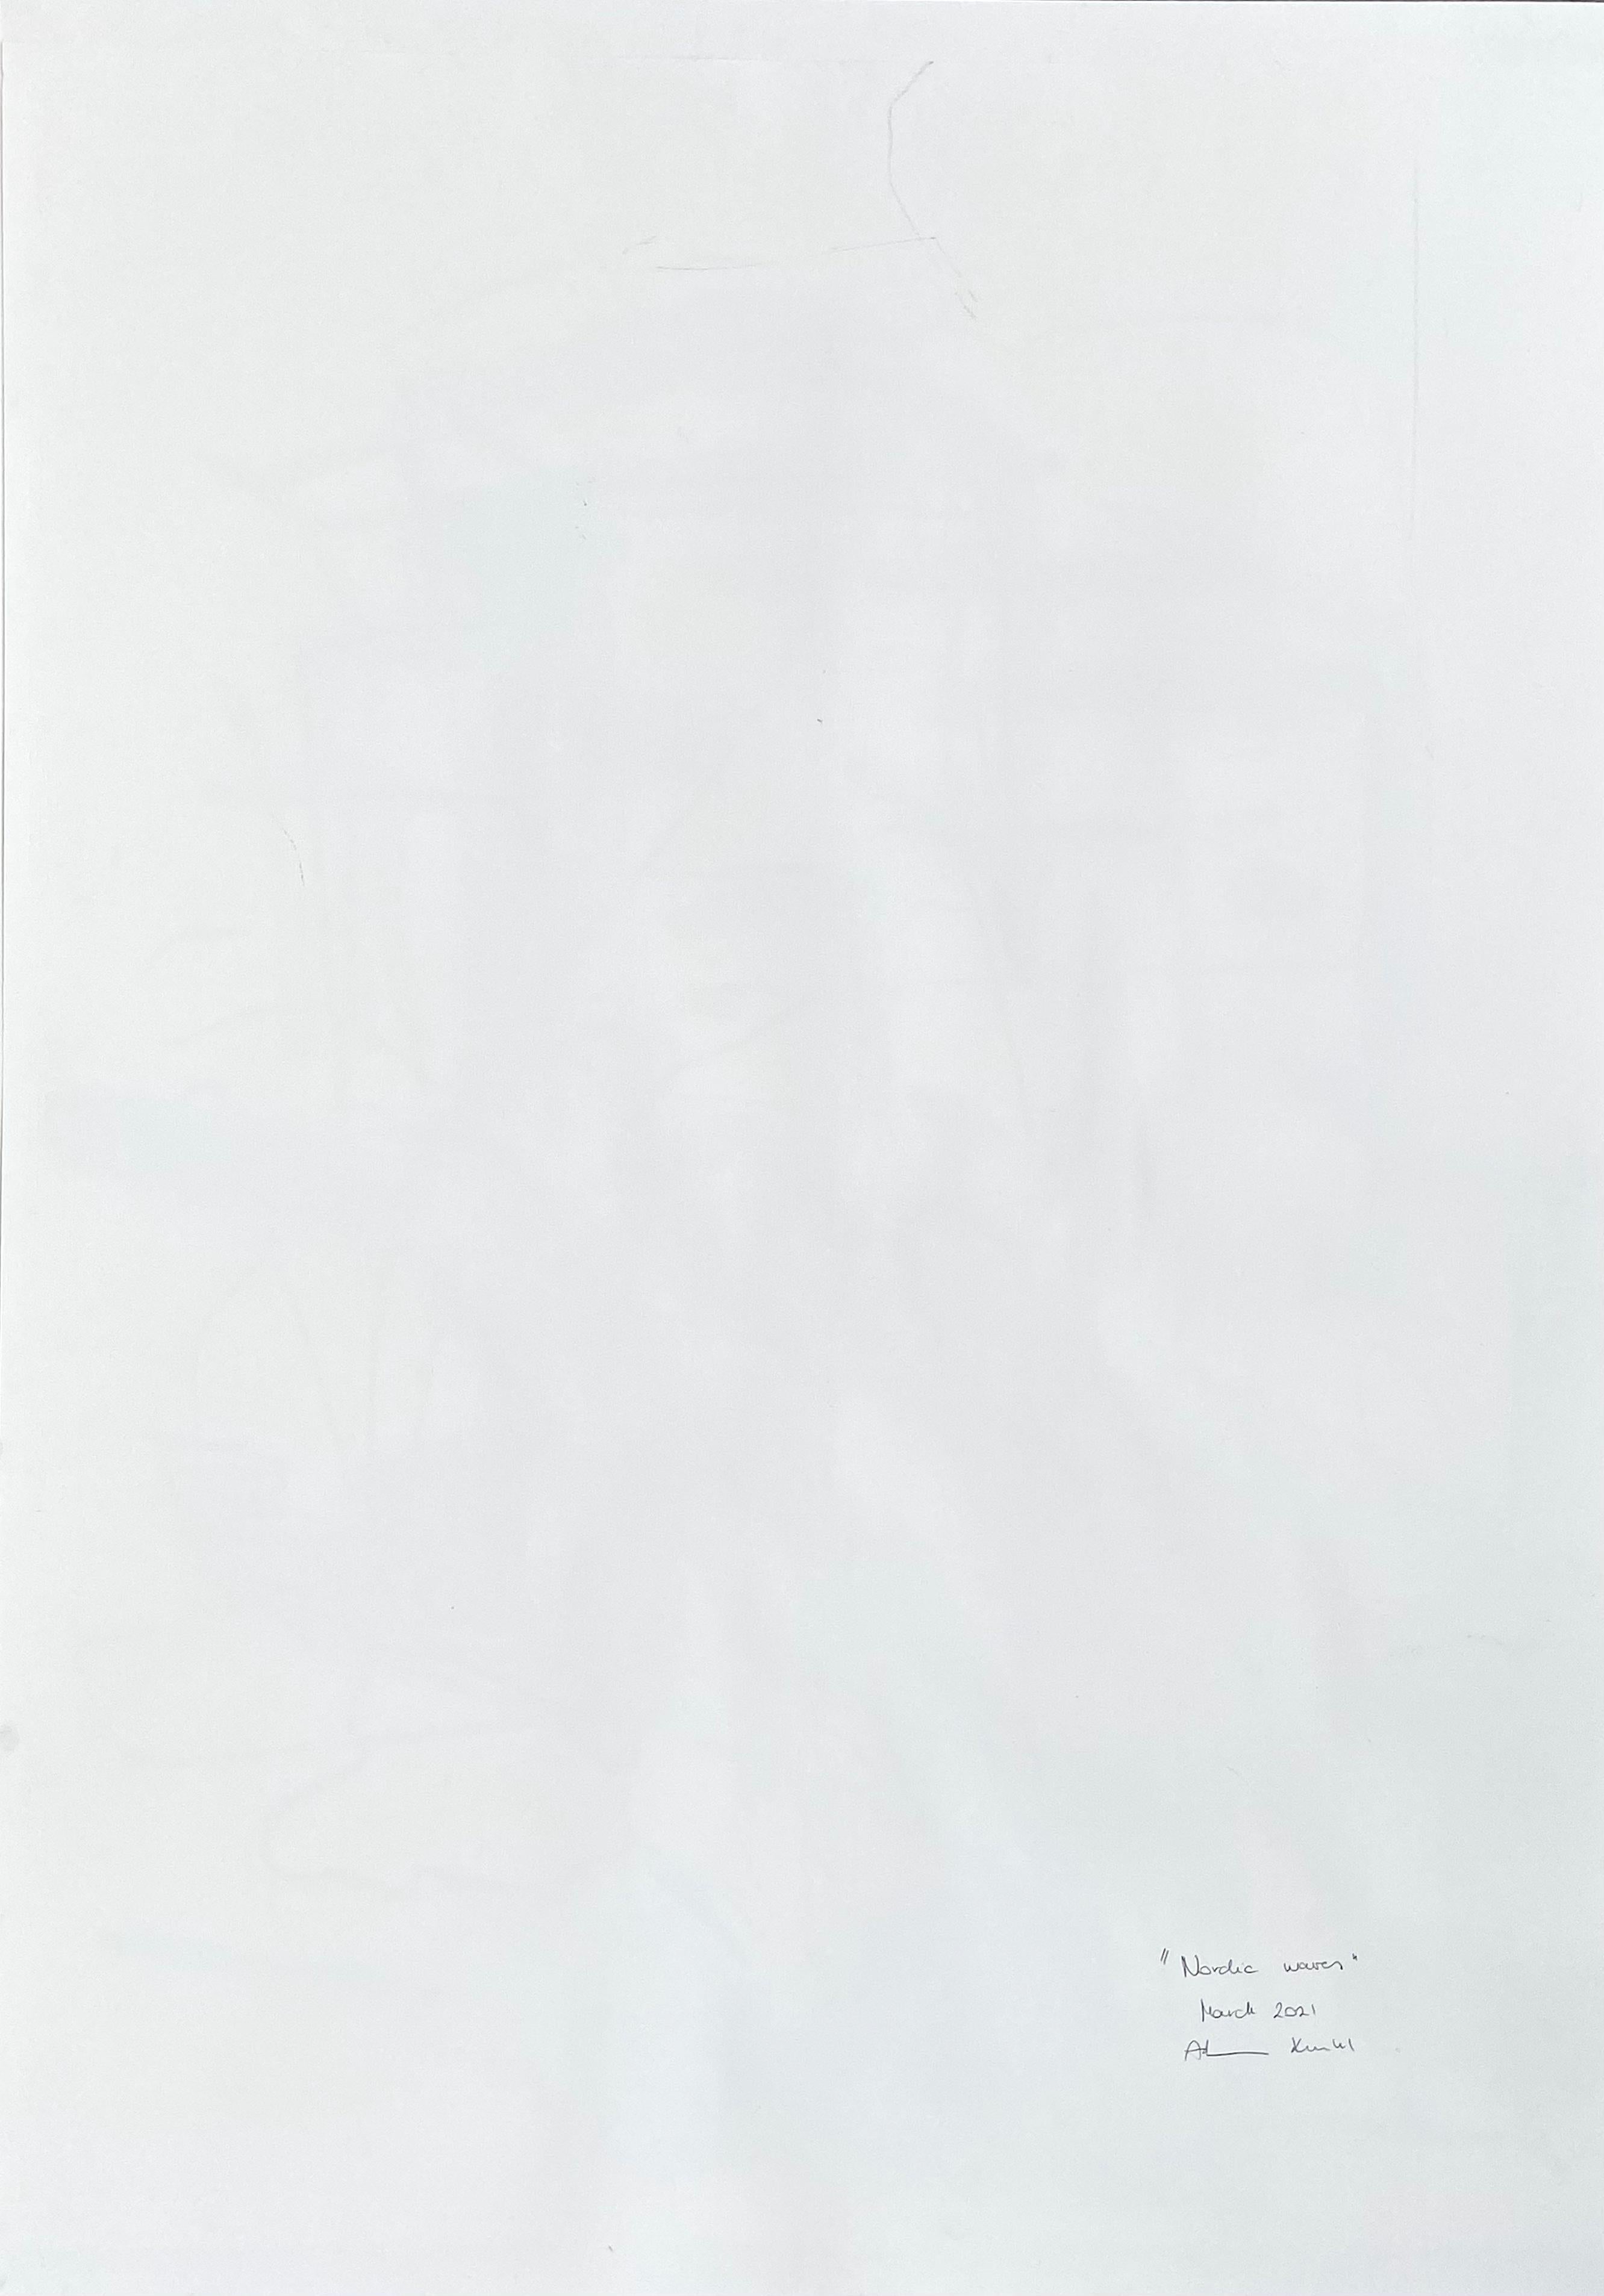 Vagues nordiques

Acrylique, fusain, pastel à l'huile et graphite sur papier - Non encadré.

Œuvre exclusive à IdeelArt.

Les peintures d'Adrienn Krahl expriment un sens profond du drame et du poids émotionnel. Krahl travaille à l'aide de différents